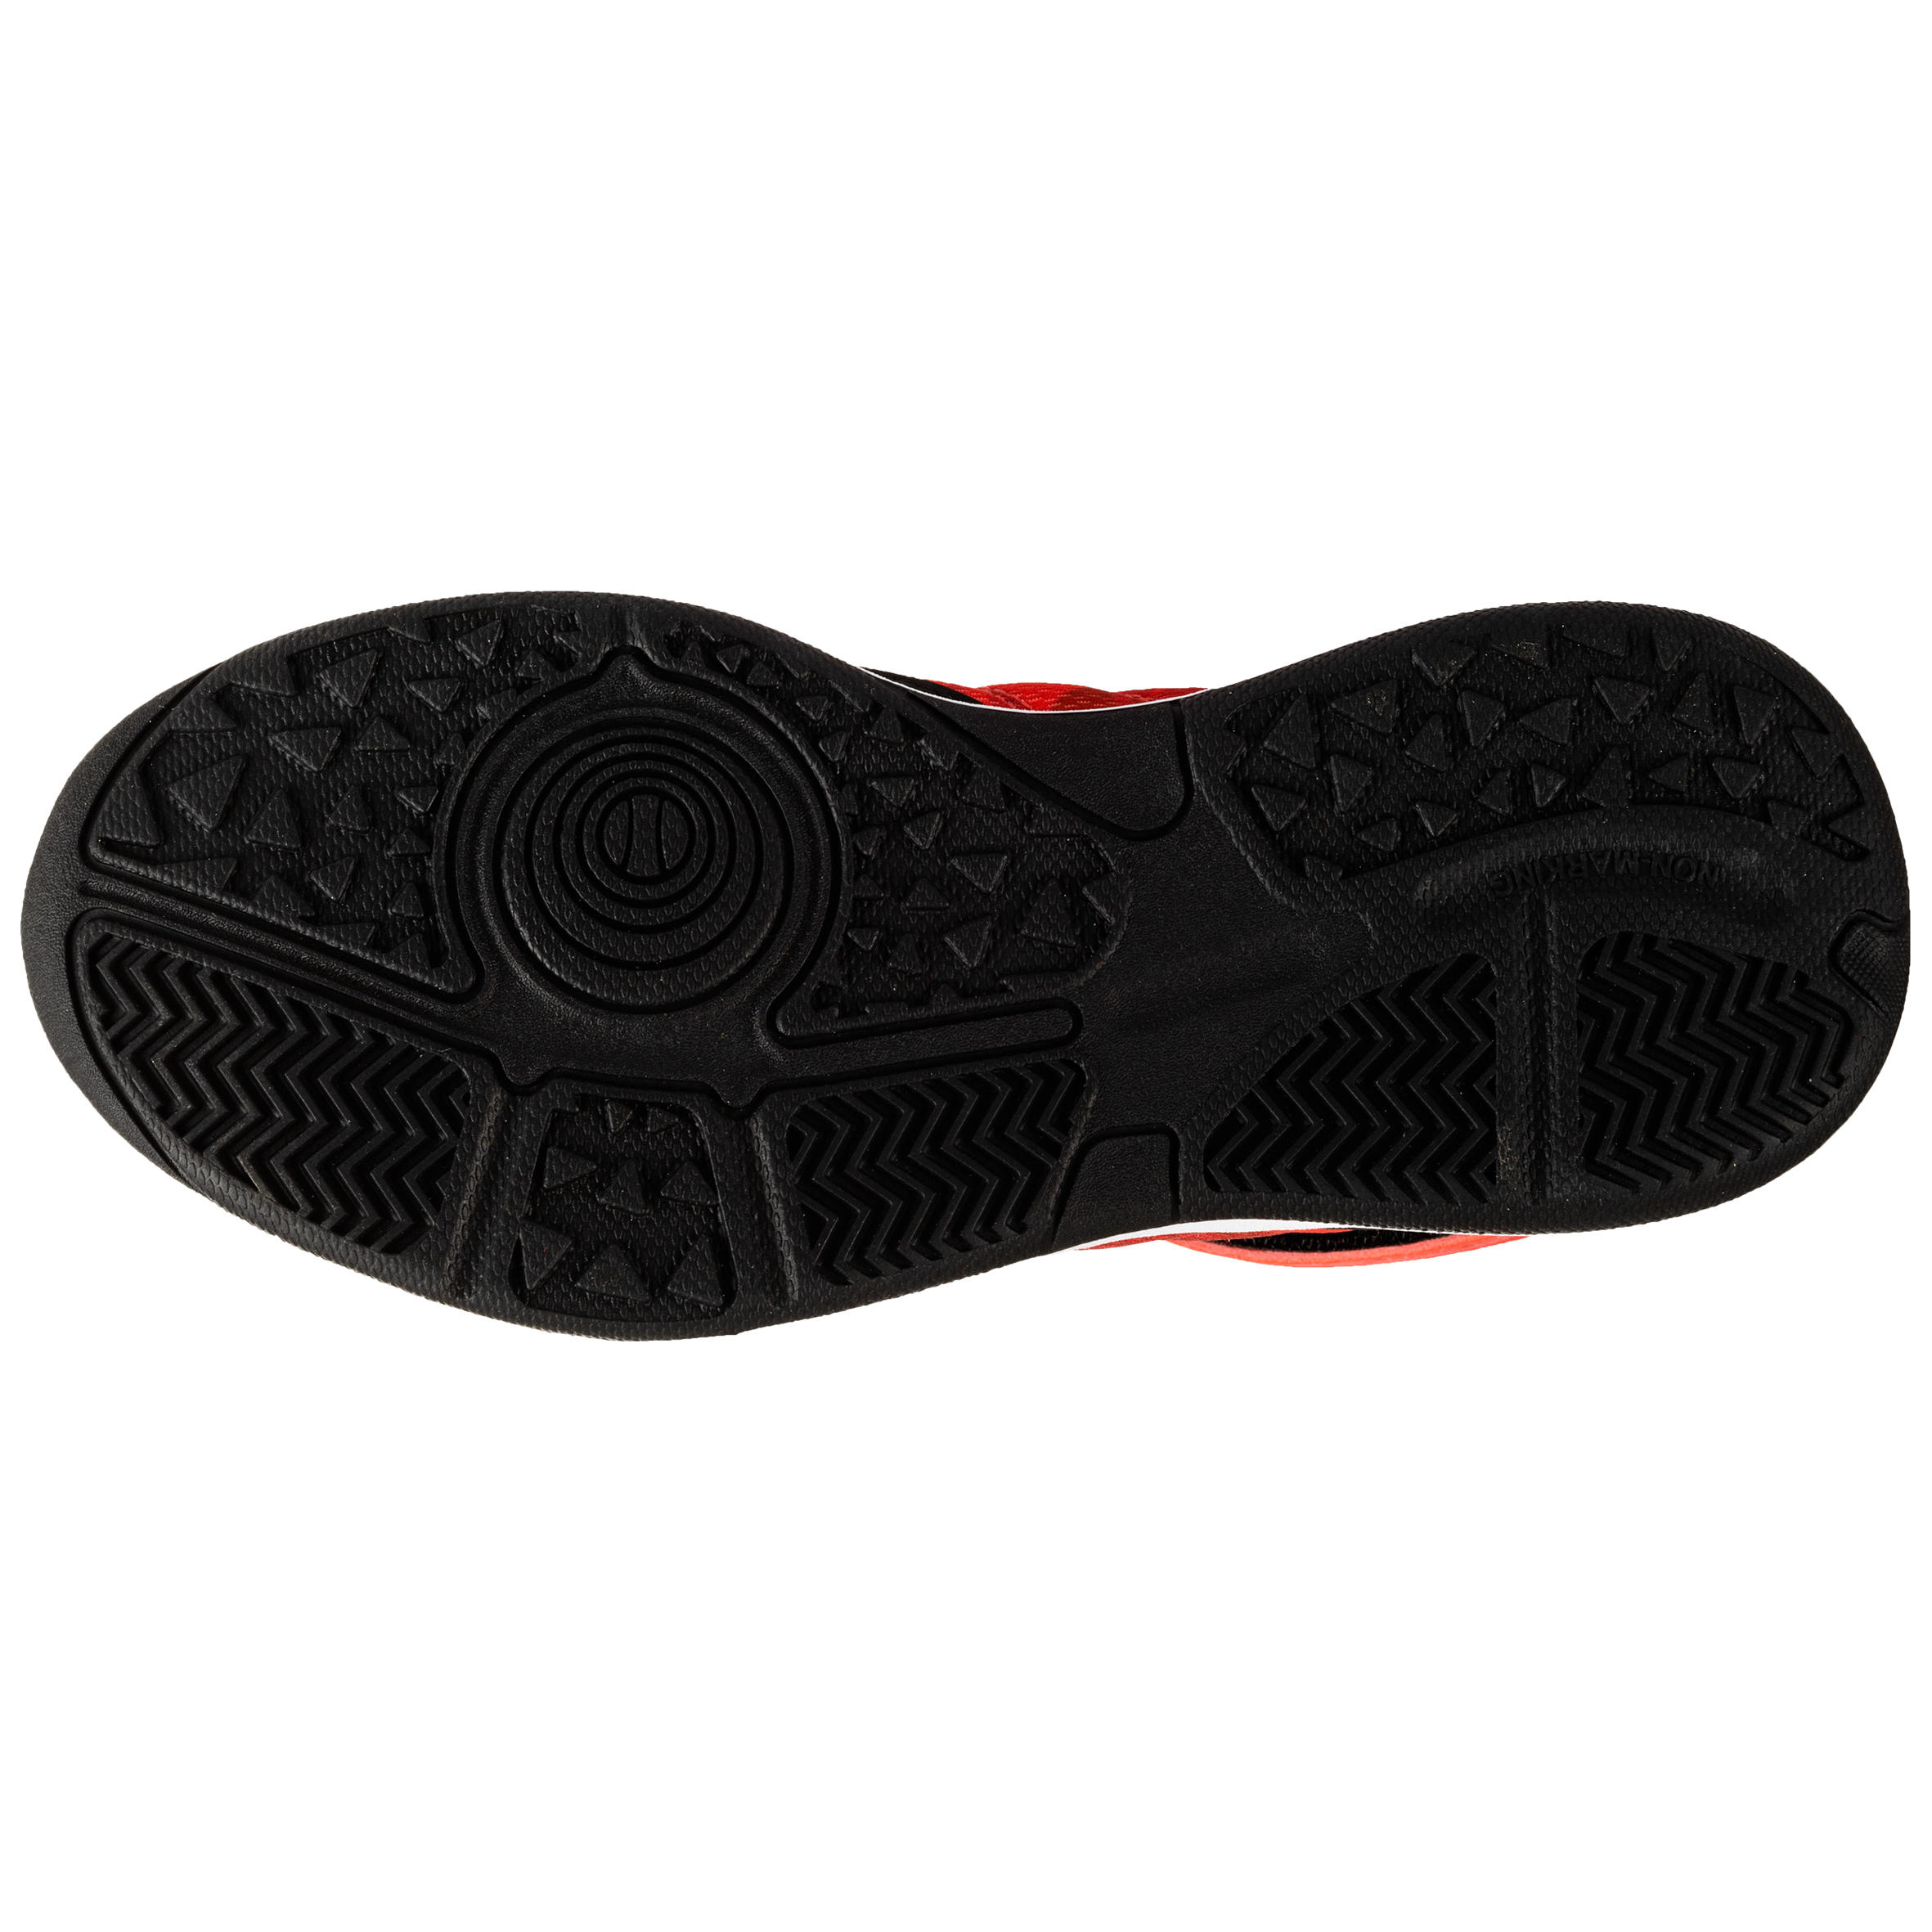 Chaussures de basketball enfant – SE 100 noir/rouge - TARMAK